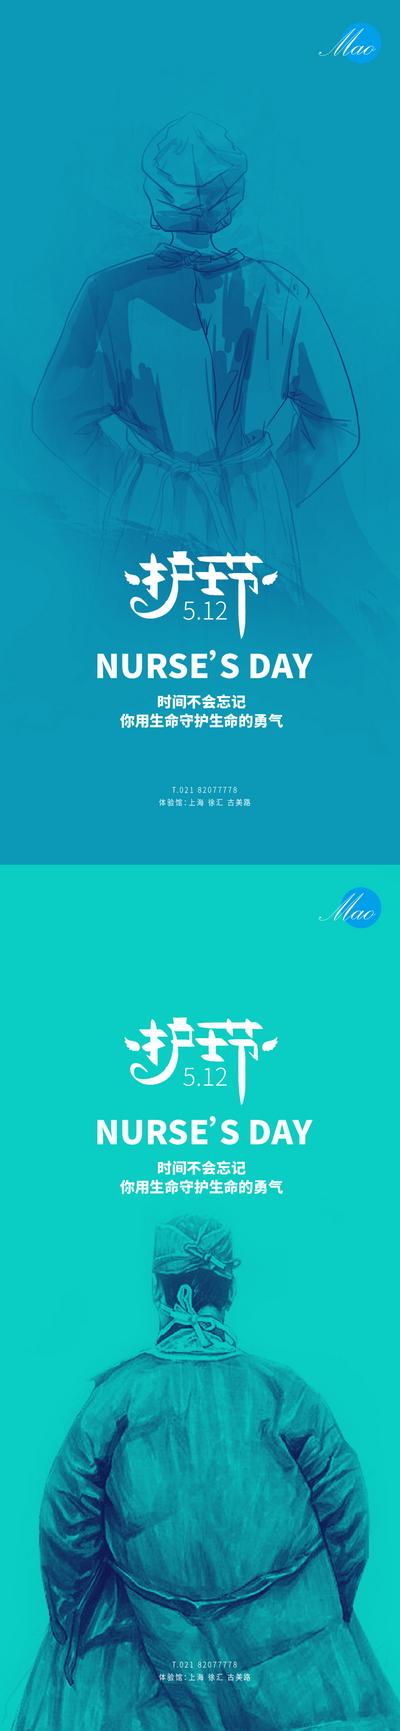 南门网 海报  公历节日  护士节   护士 医生  防疫  插画 